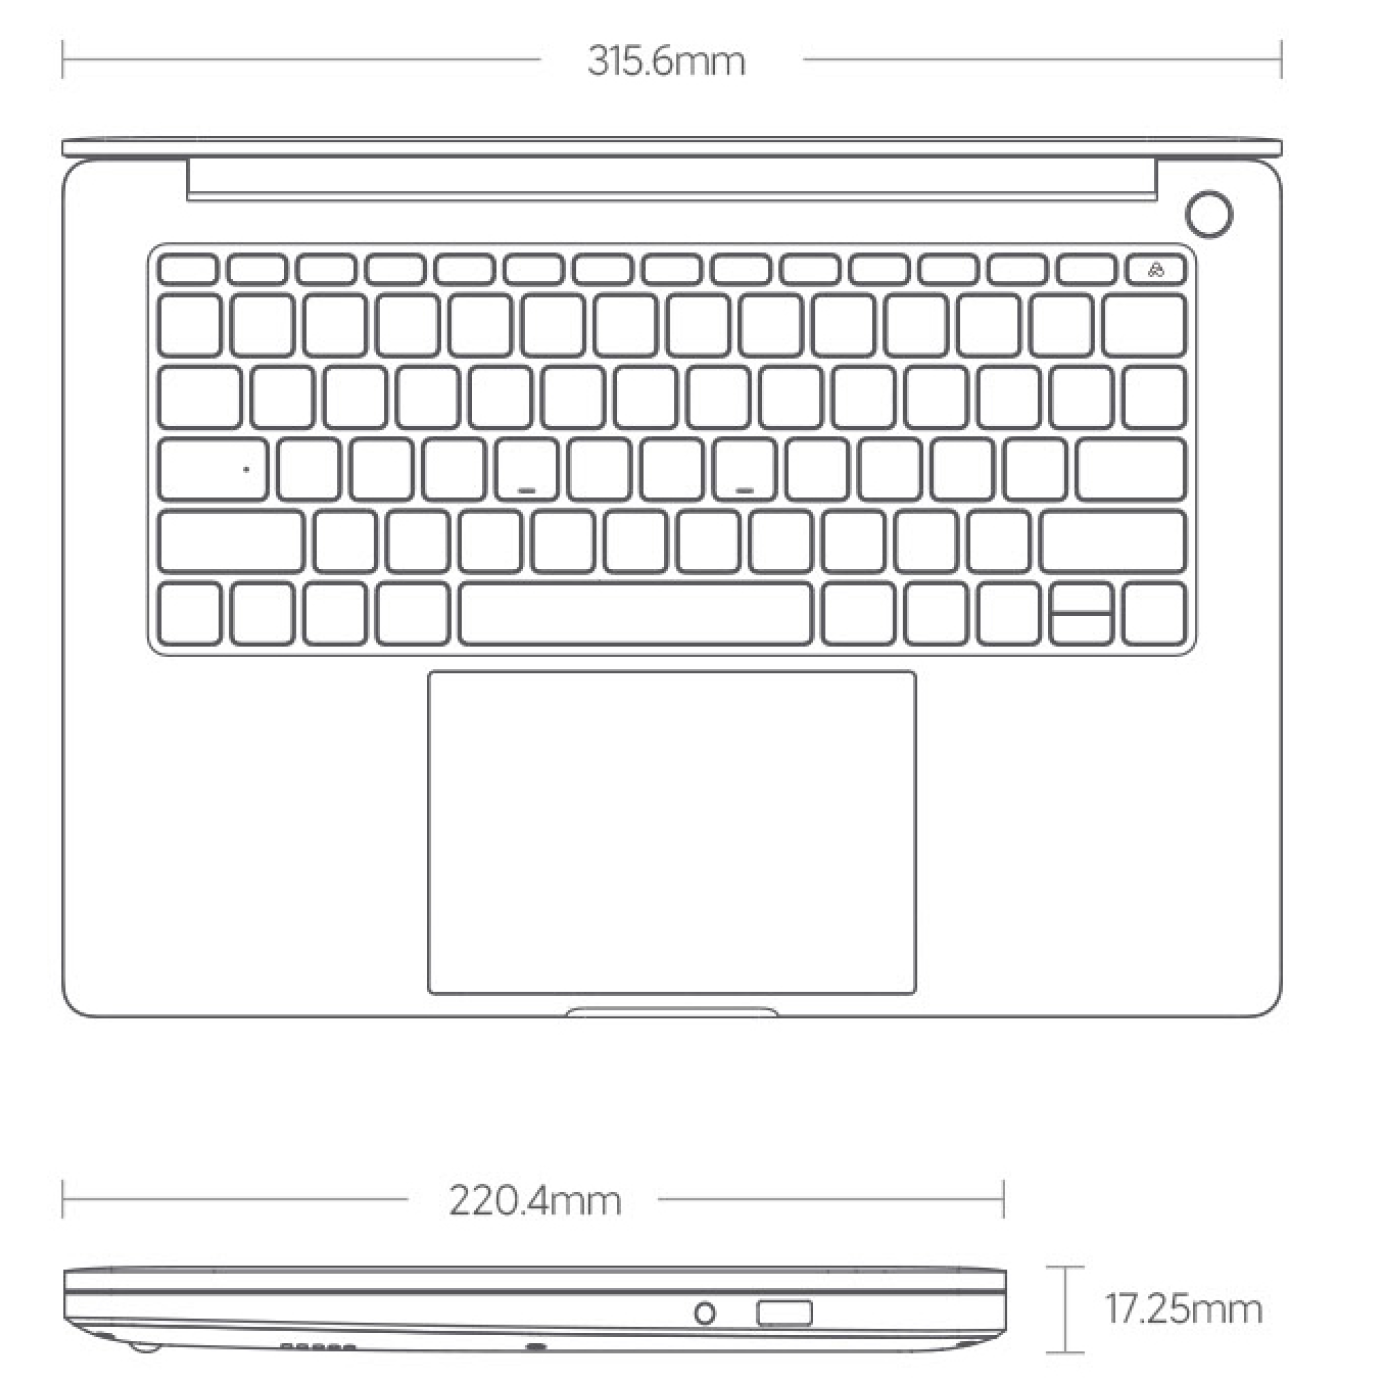 размеры ноутбука redmibook pro 14 